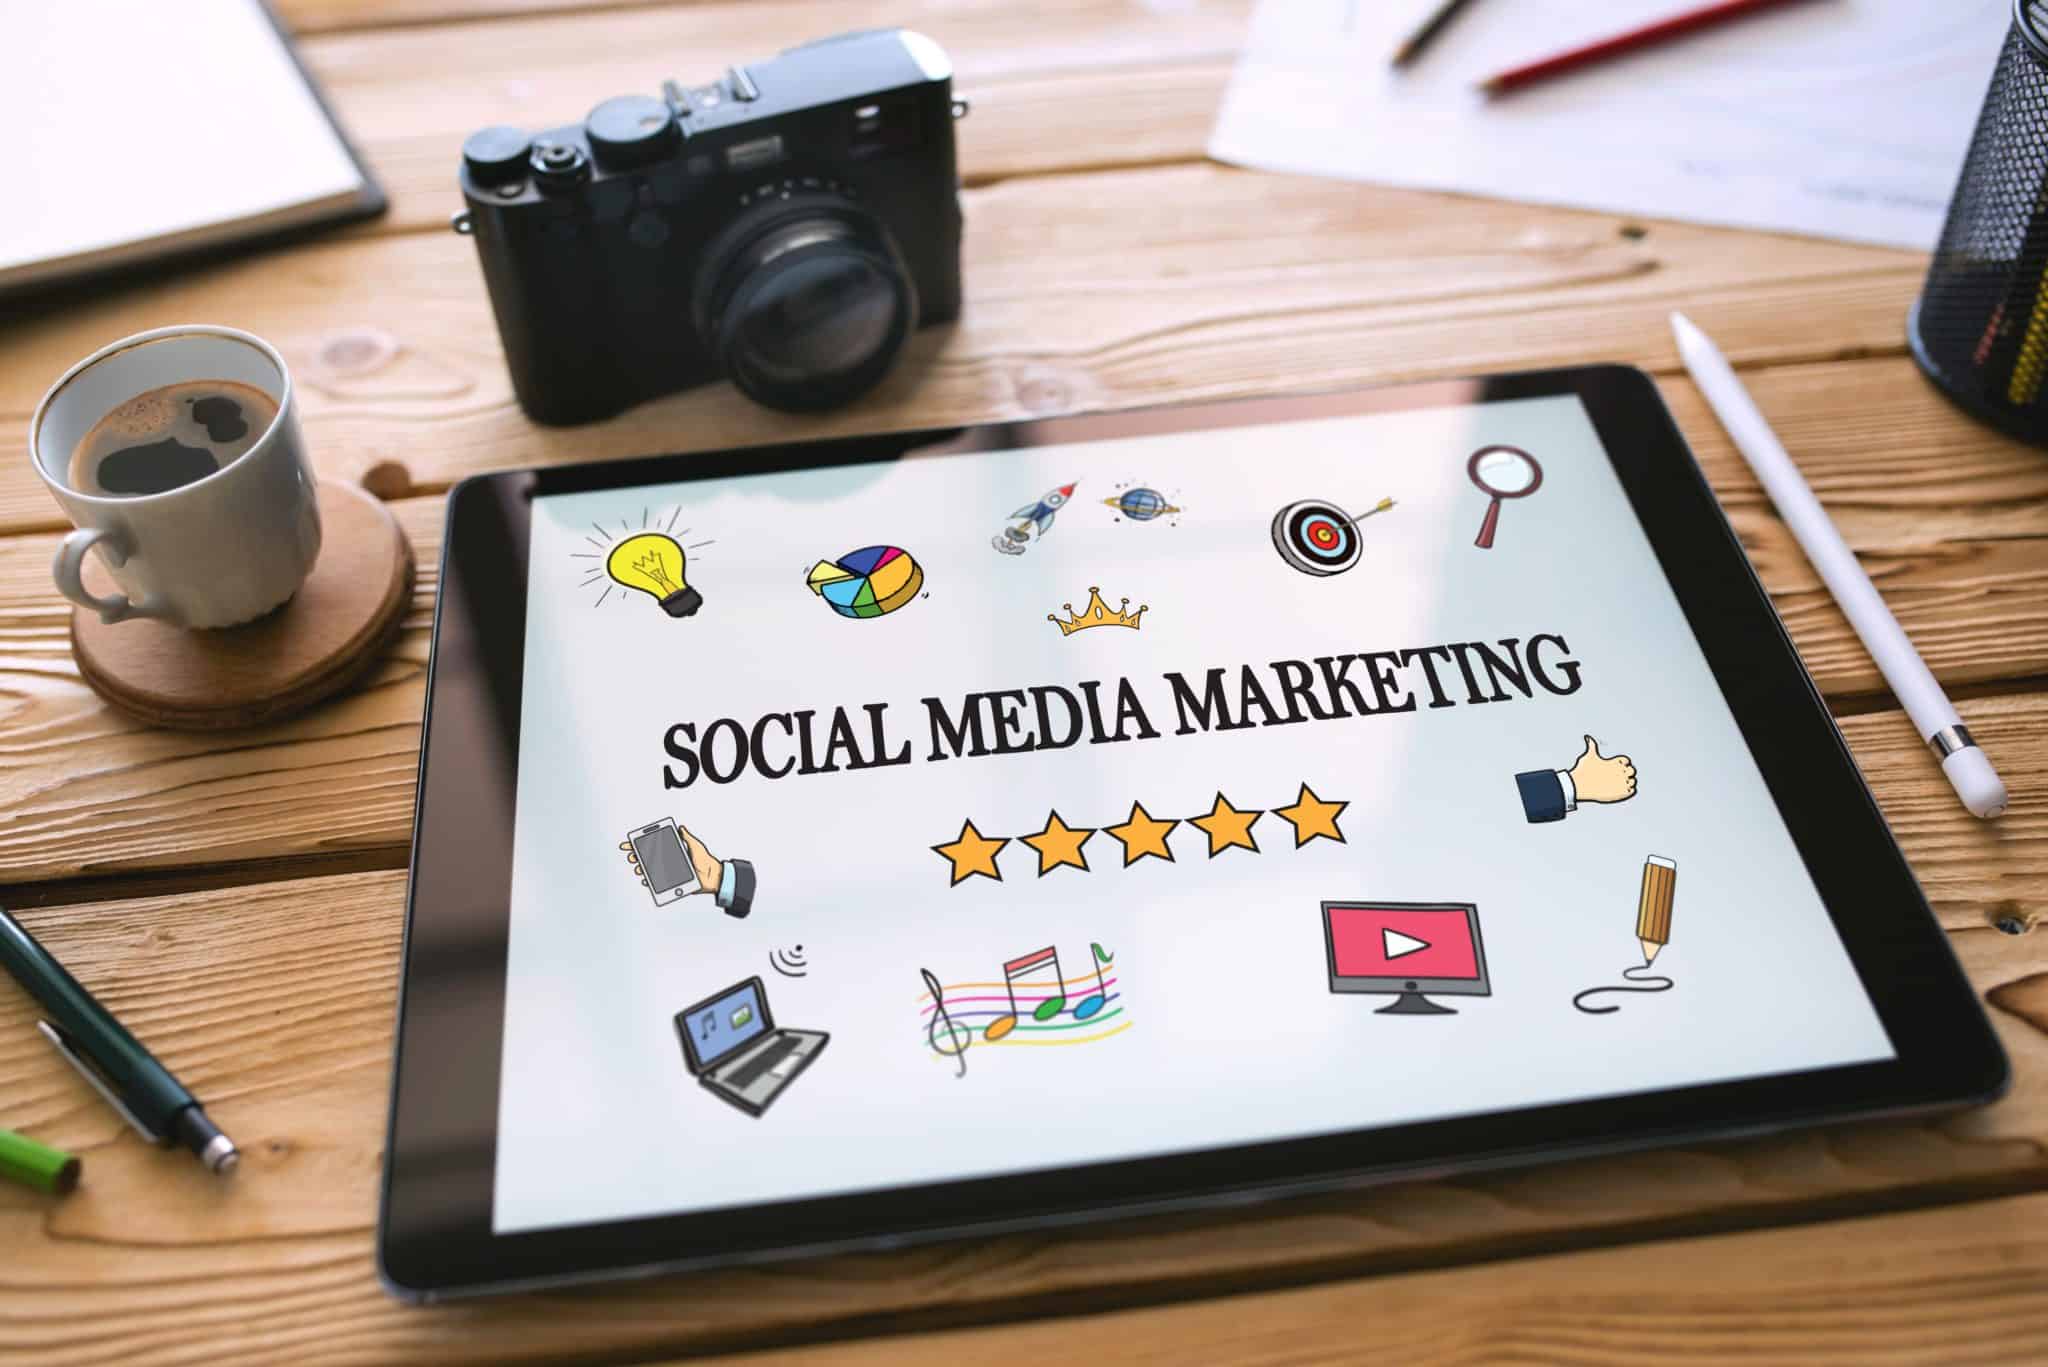 Social media marketing icons on tablet